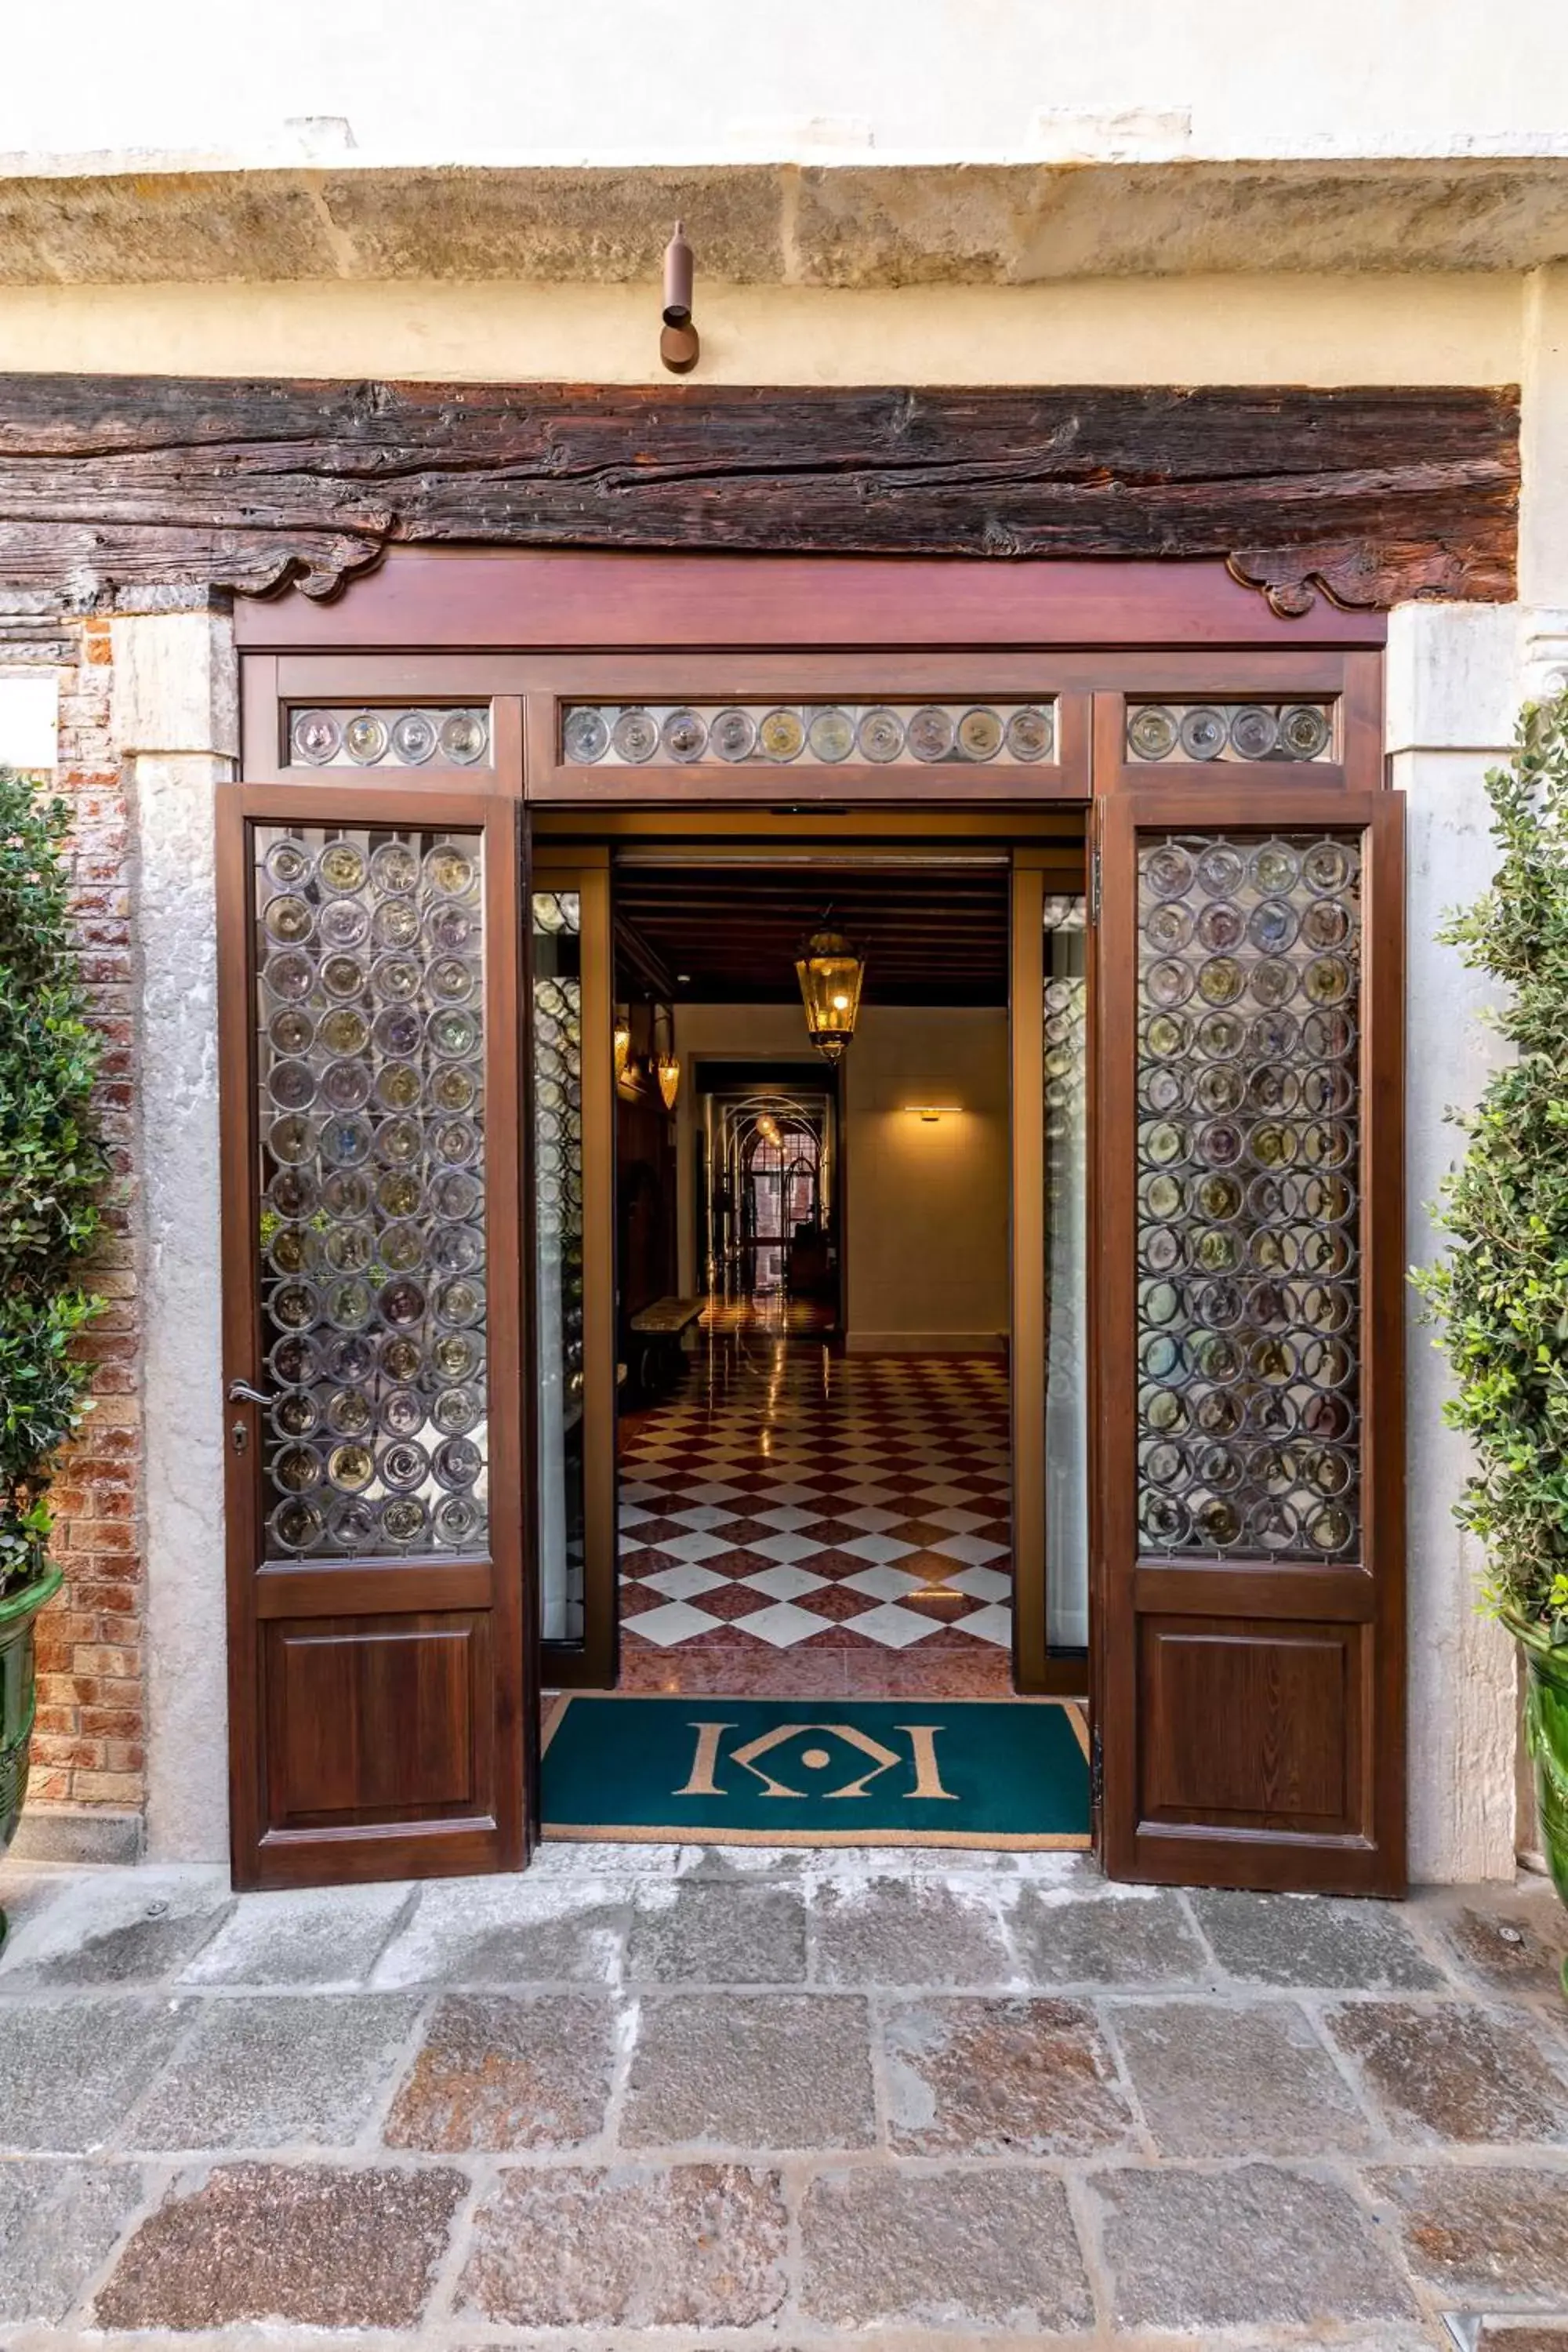 Lobby or reception, Facade/Entrance in Palazzo Keller